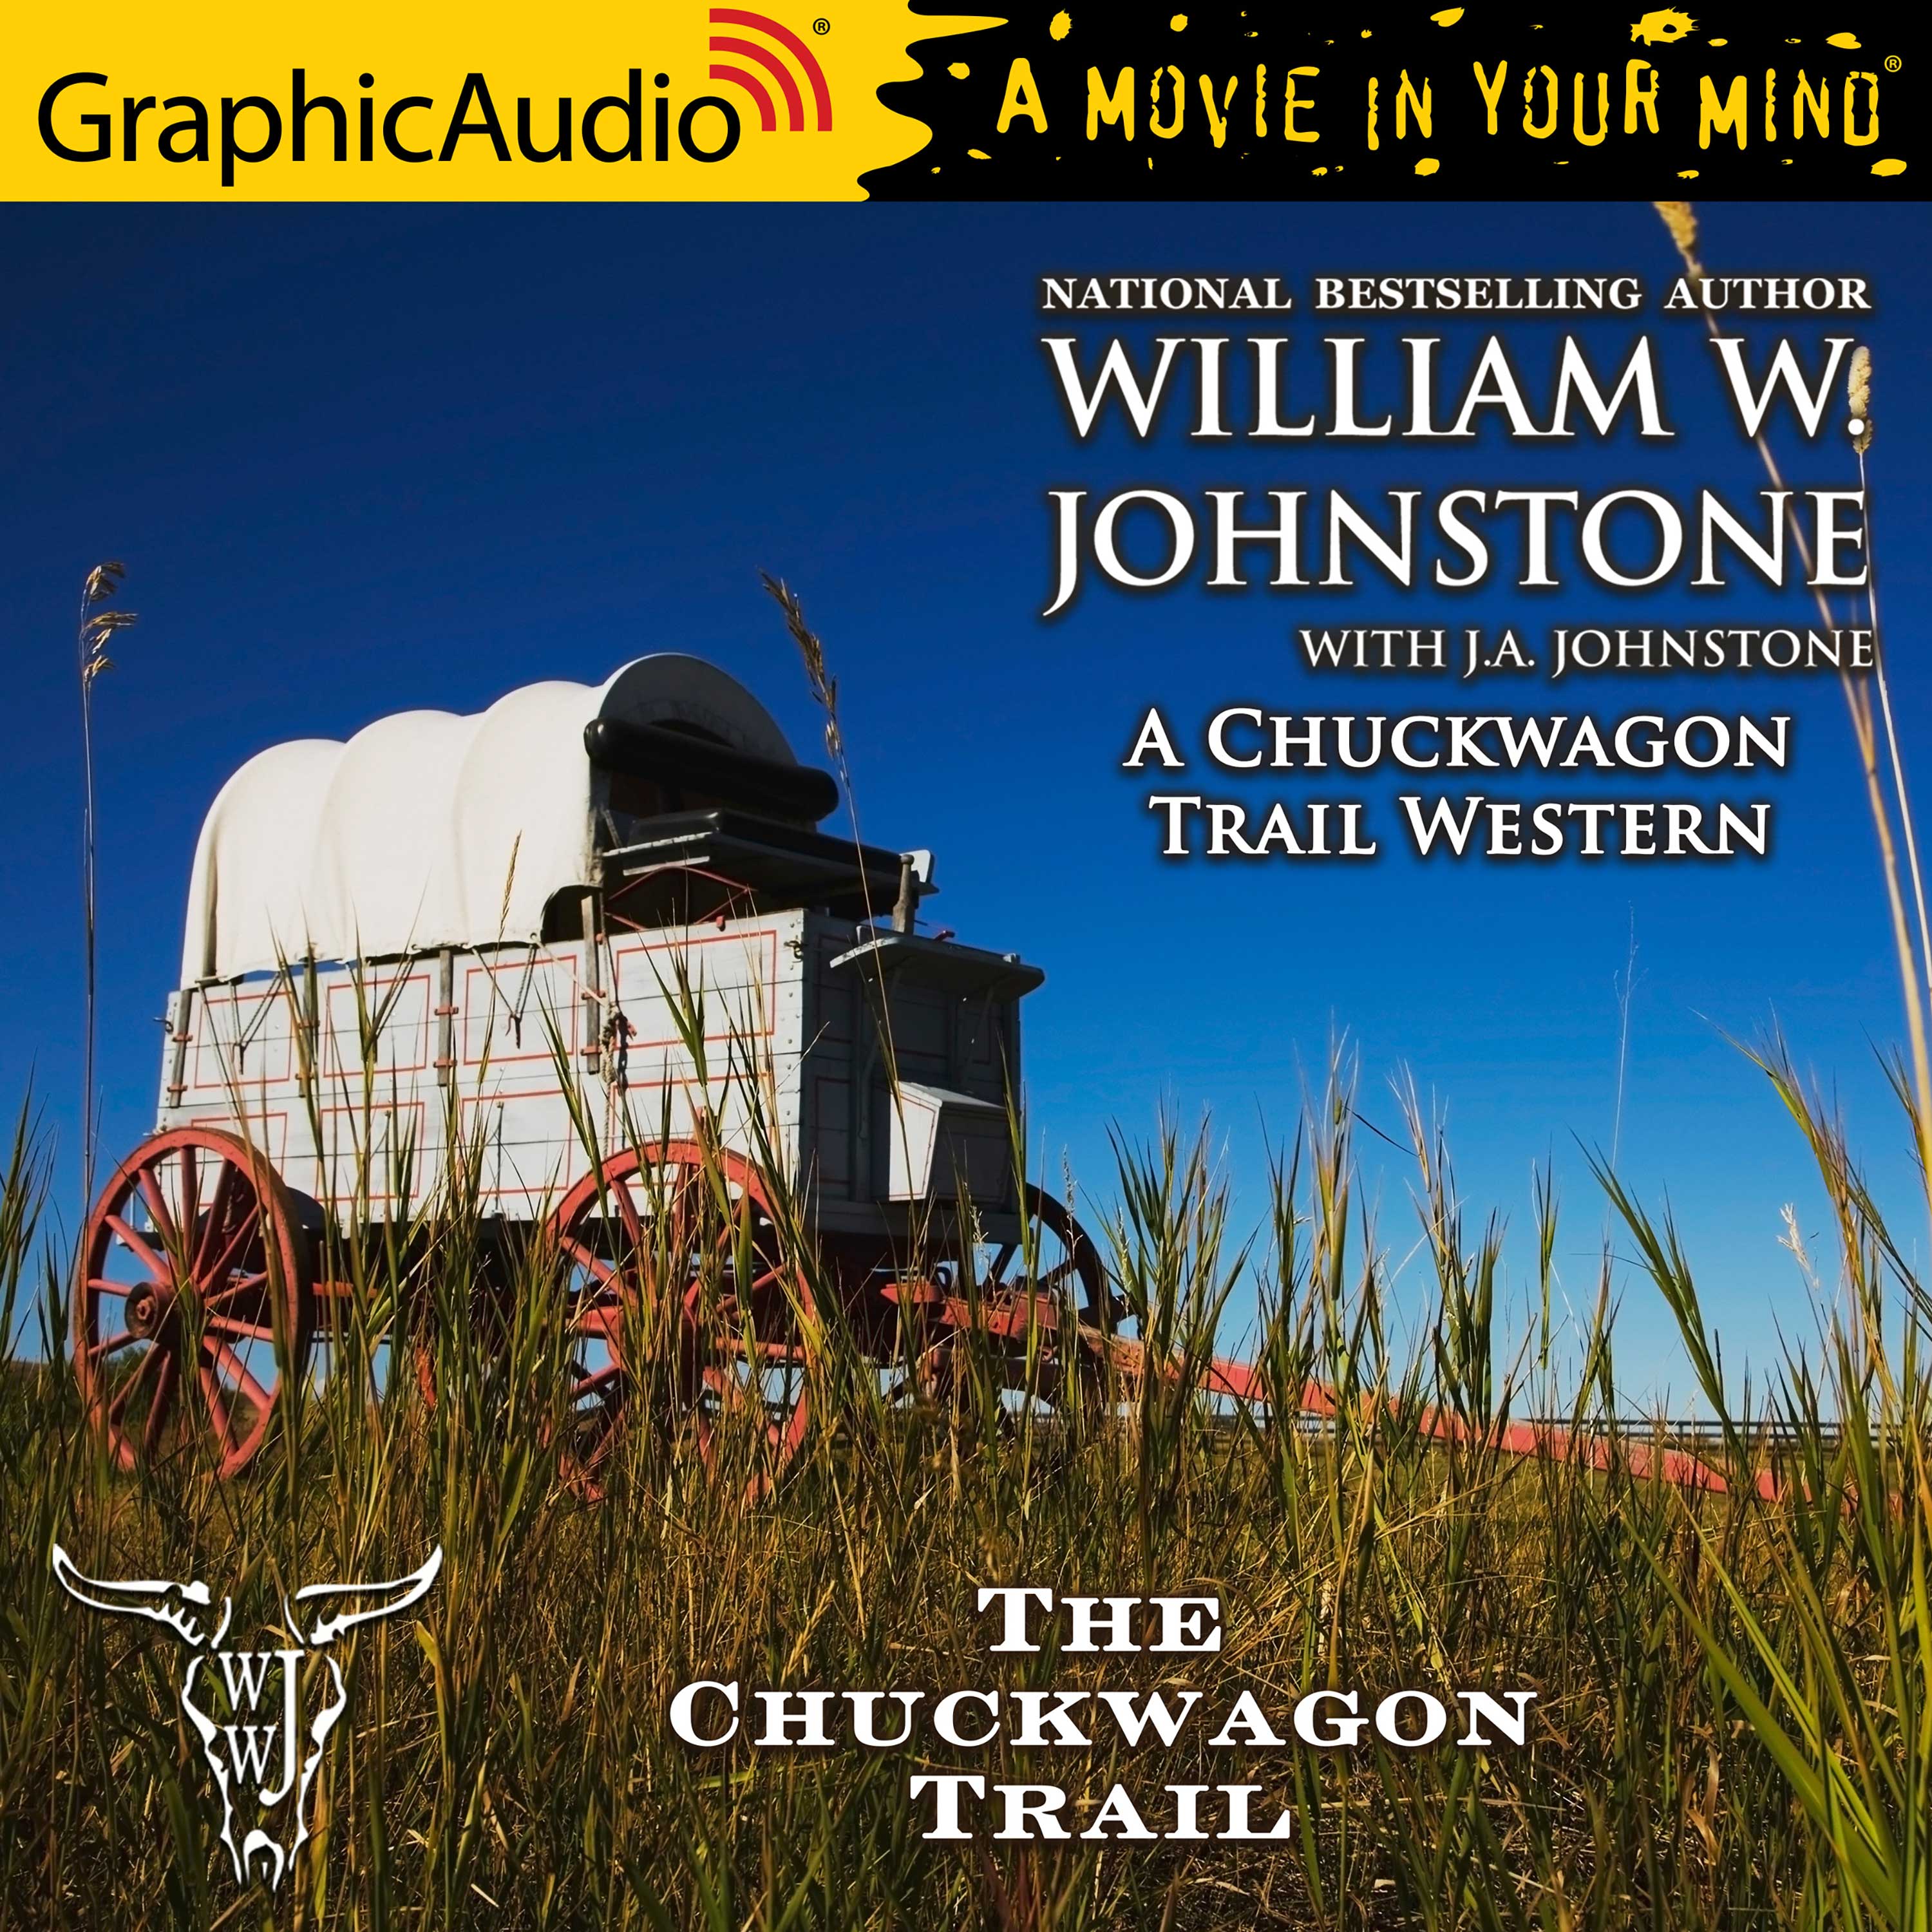 Chuckwagon Trail Western